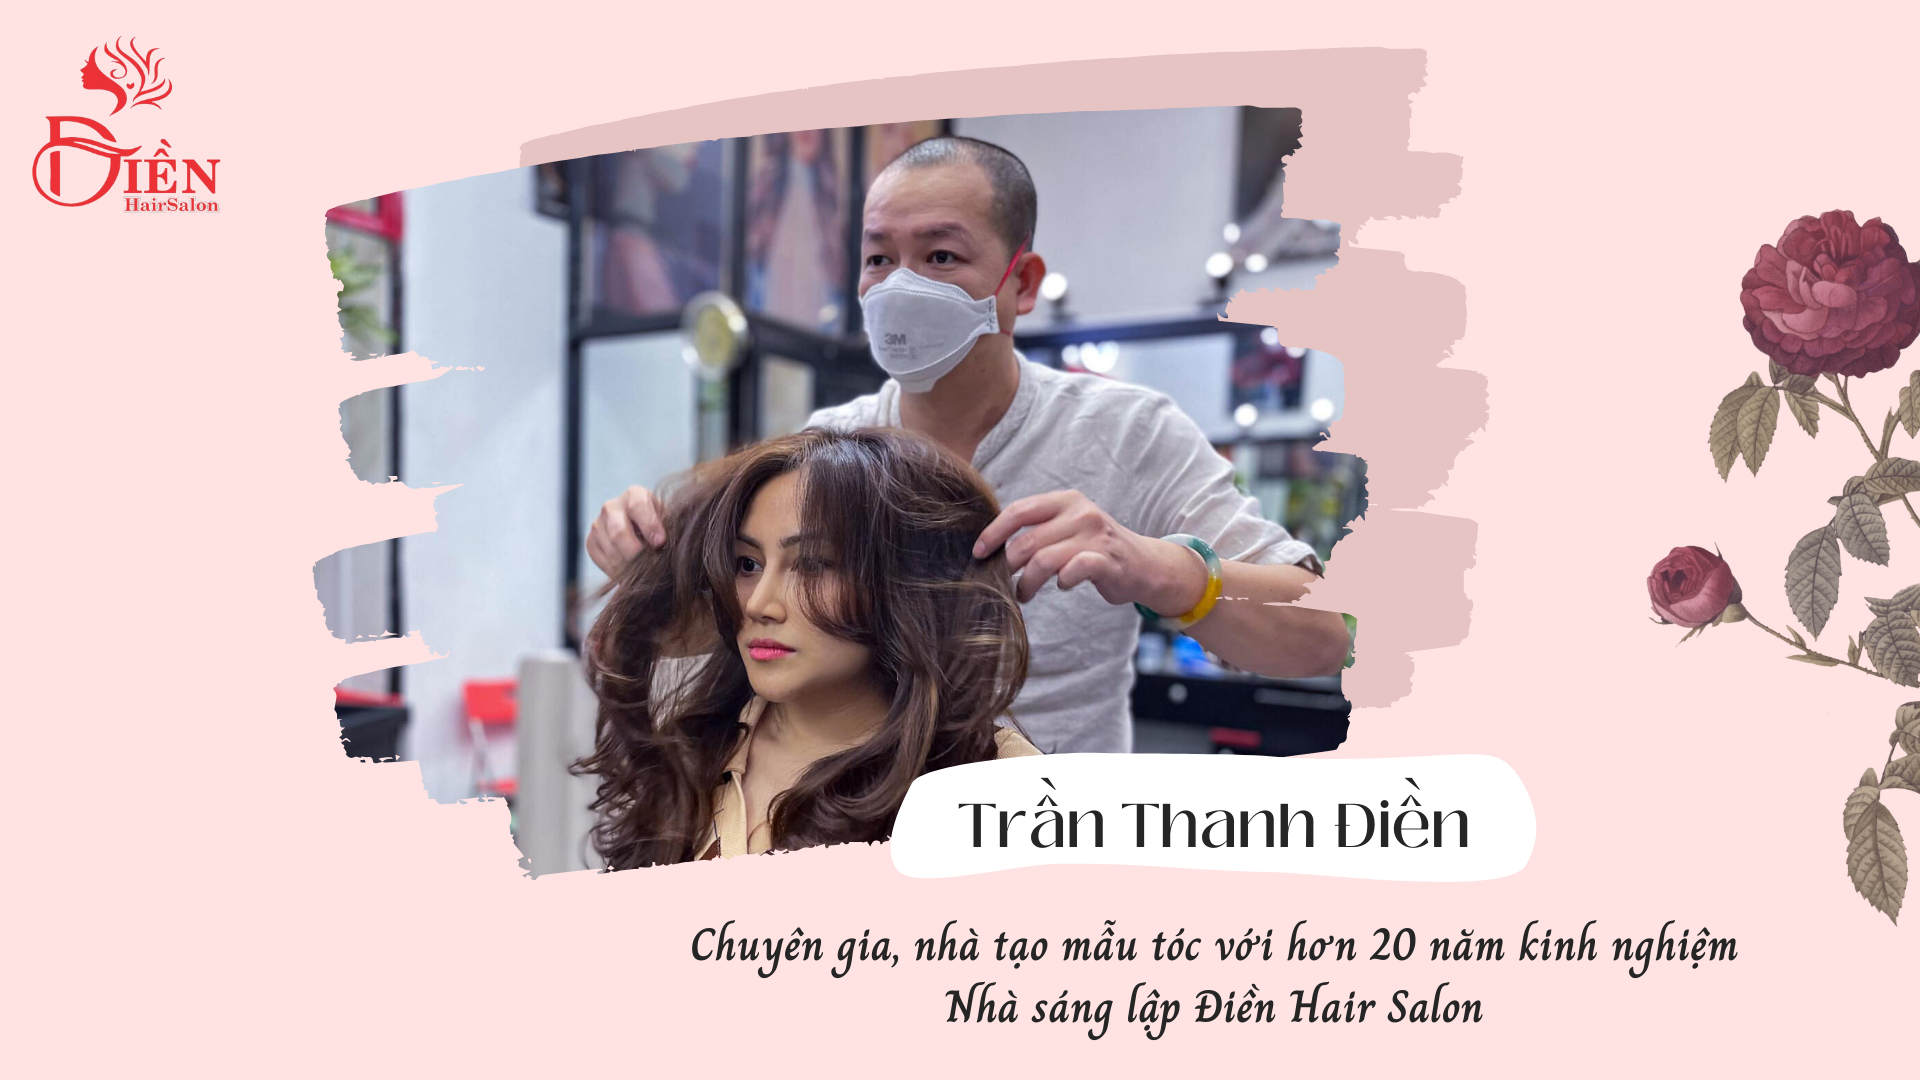 Nhà tạo mẫu tóc Trần Thanh Điền